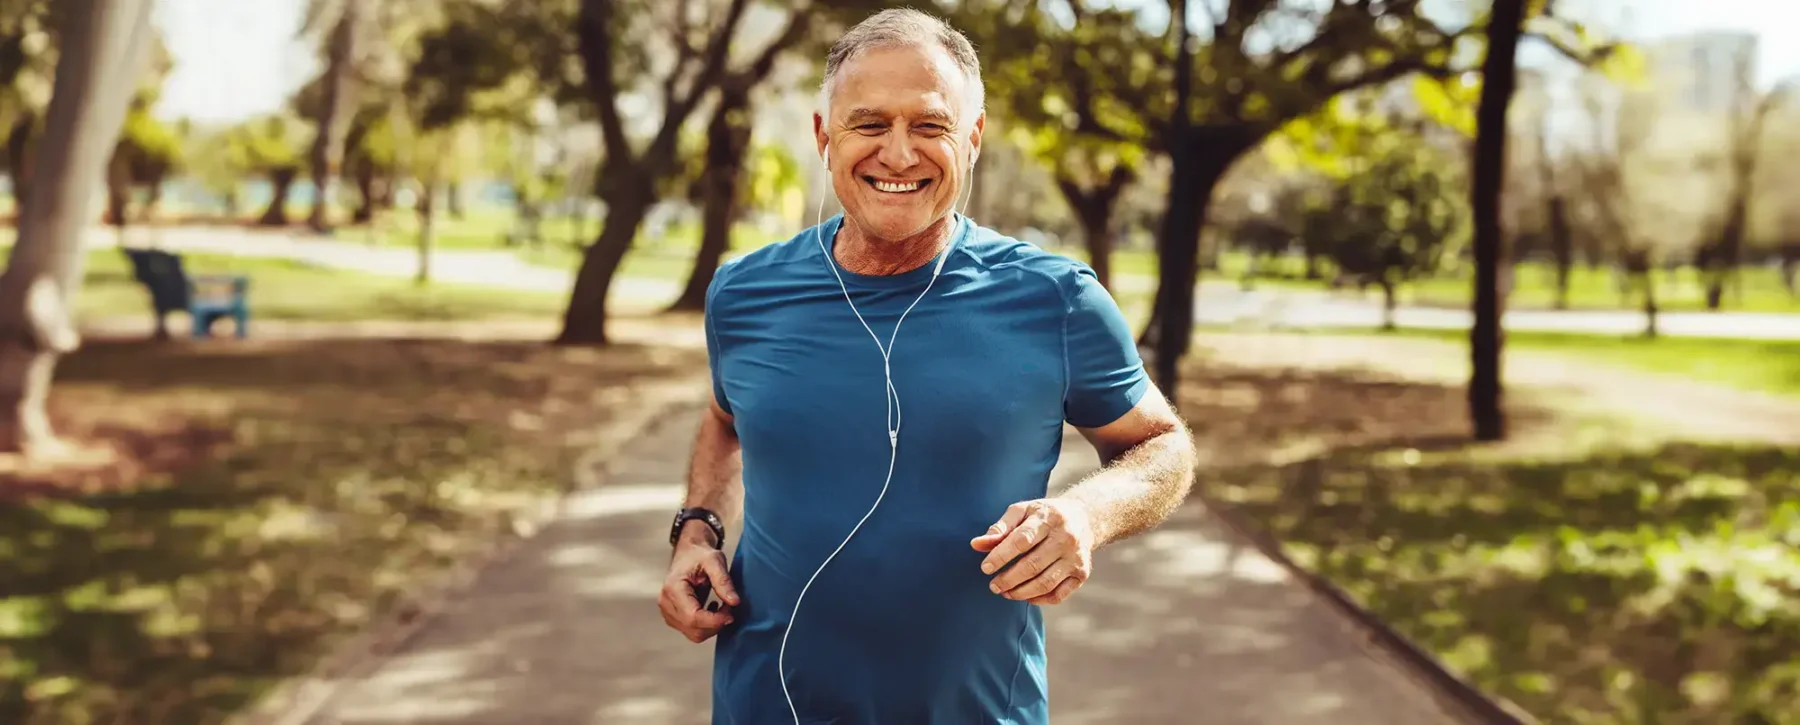 Older man jogging with headphones in